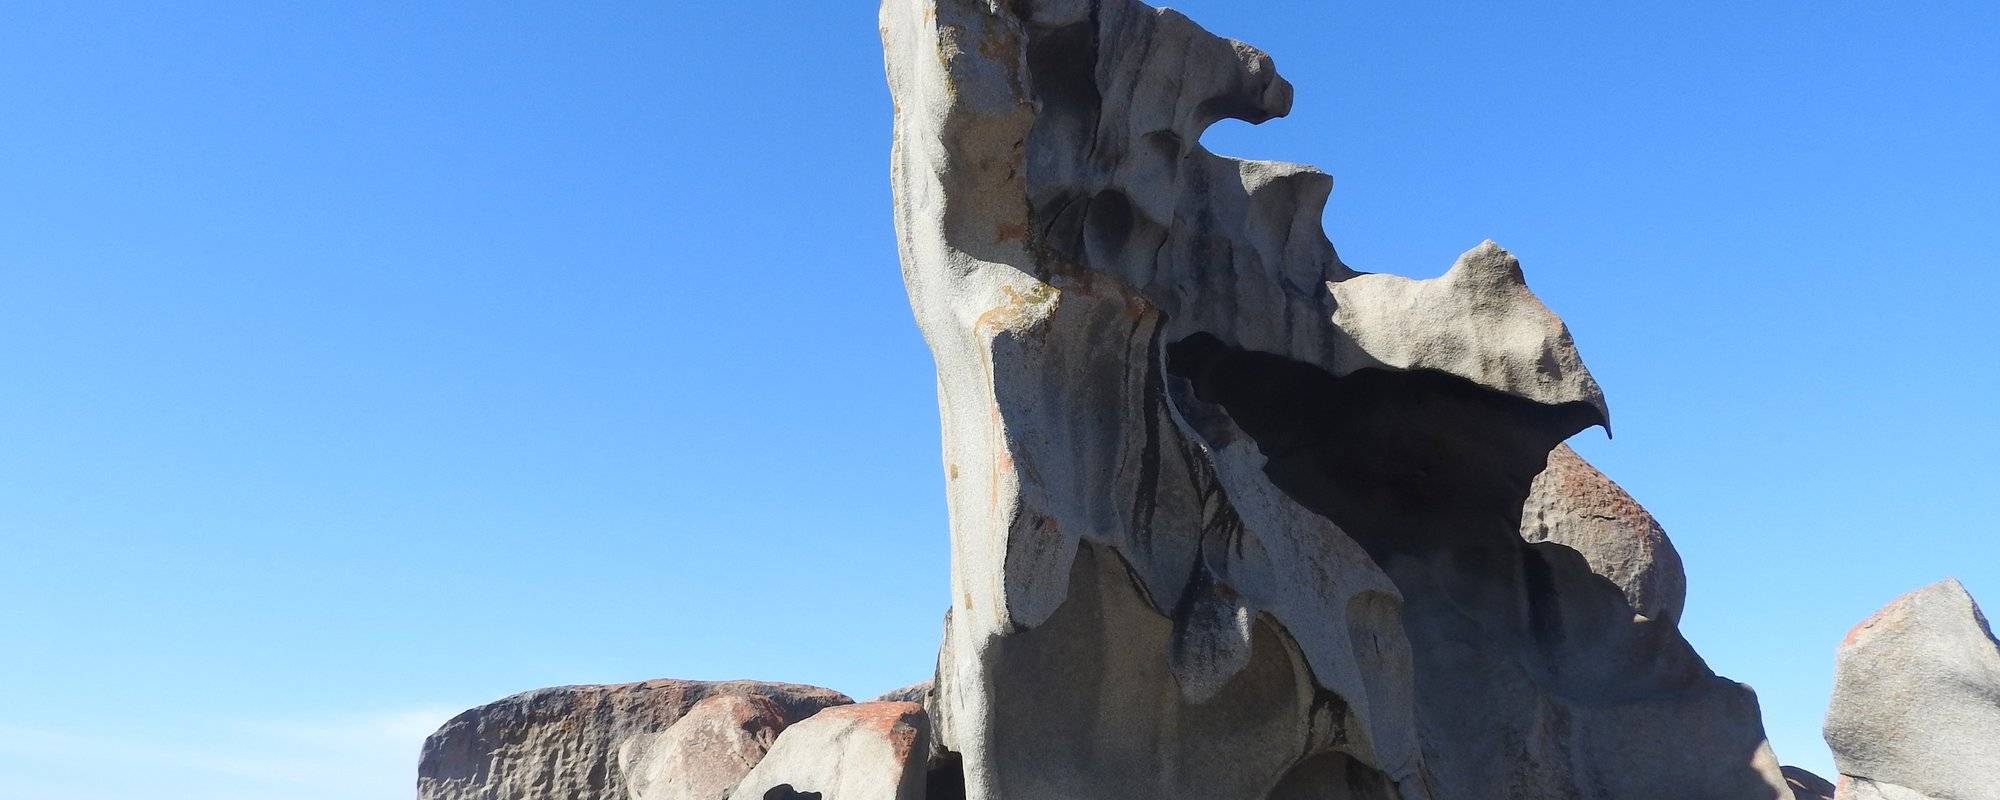 Remarkable Rocks - Kangaroo Island Journey #1